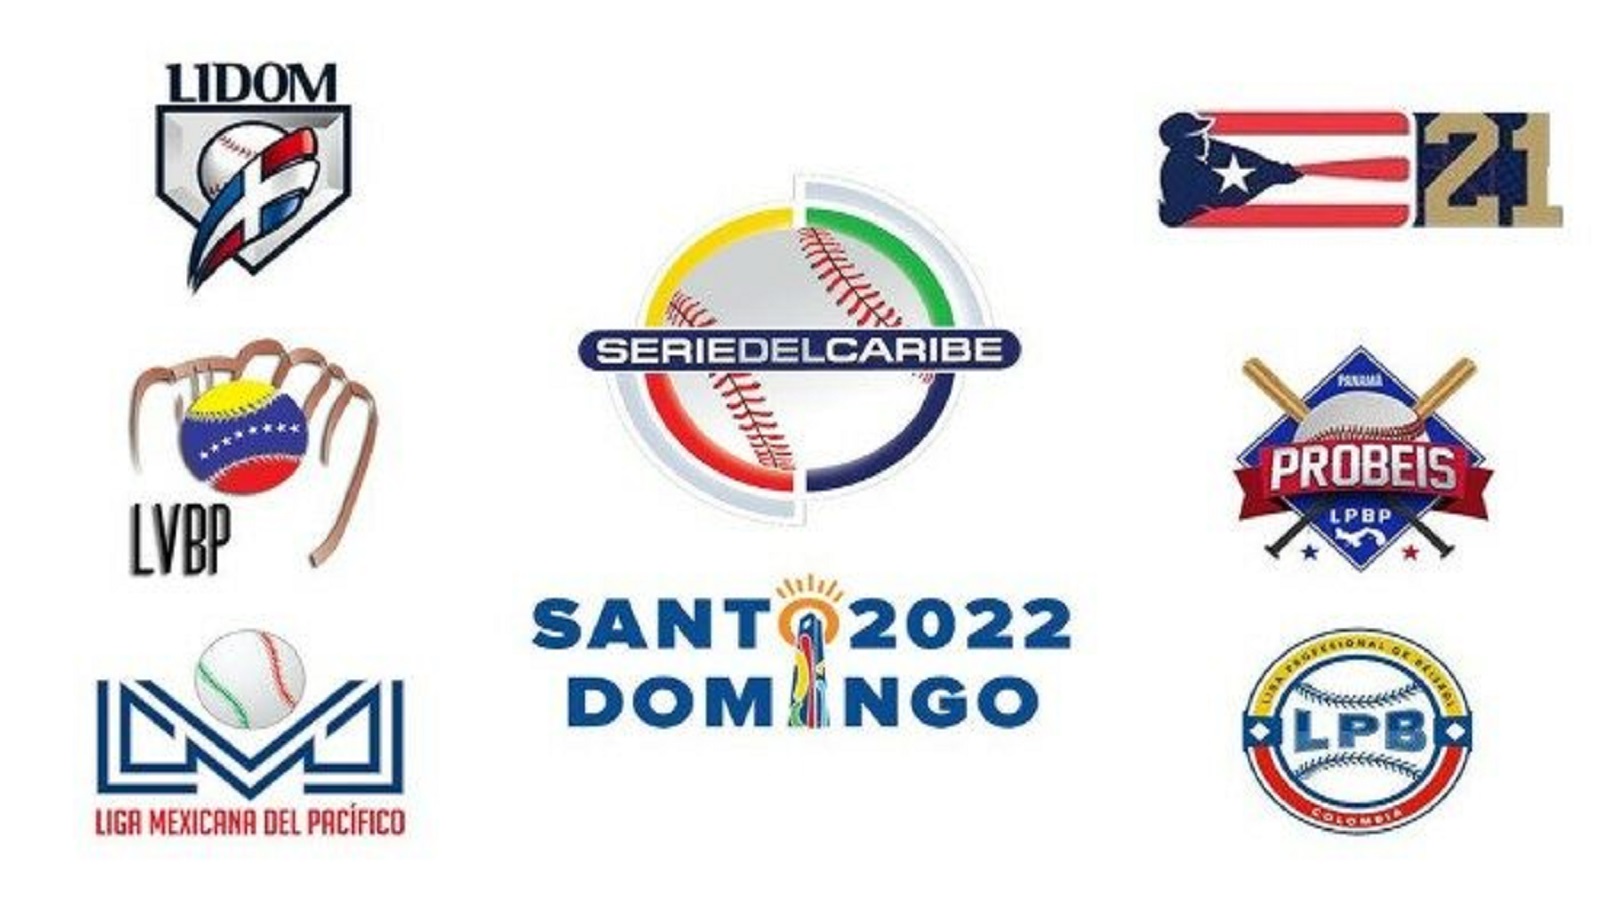 Conoce las posiciones, resultados y juegos de Serie del Caribe 2022 - Club Deportes Sports Weekly